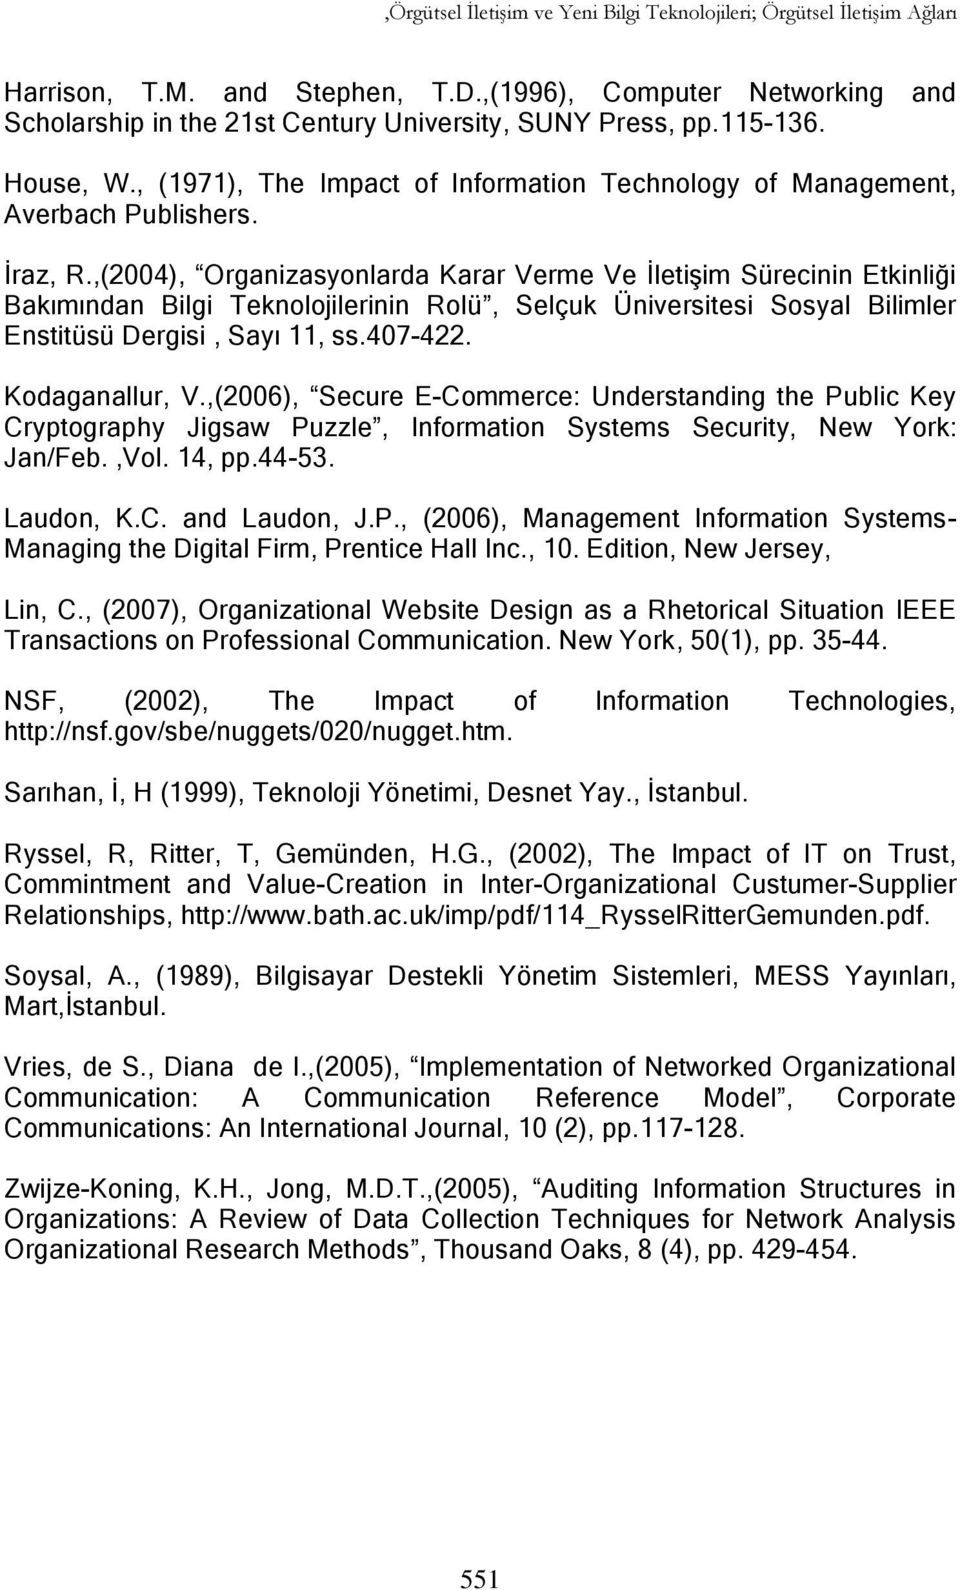 ,(2004), Organizasyonlarda Karar Verme Ve İletişim Sürecinin Etkinliği Bakımından Bilgi Teknolojilerinin Rolü, Selçuk Üniversitesi Sosyal Bilimler Enstitüsü Dergisi, Sayı 11, ss.407-422.